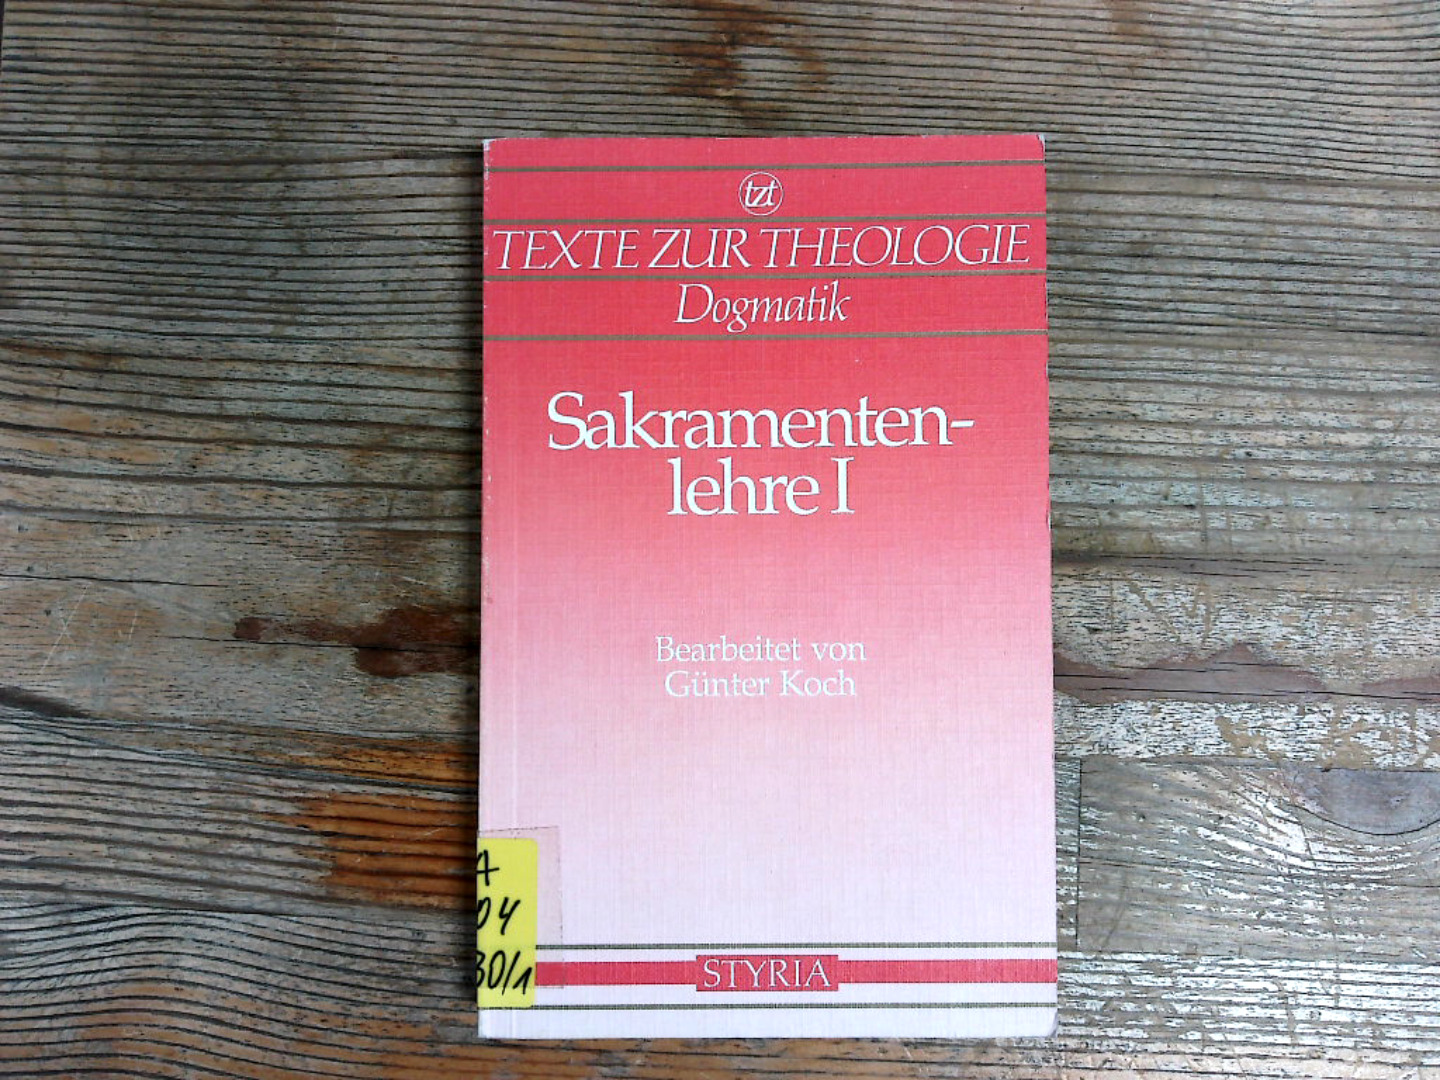 Sakramentenlehre, Band 1, Allgemeine Sakramentenlehre bis Firmung. Texte zur Theologie, Dogmatik. - Koch, Günter und Wolfgang Beinert